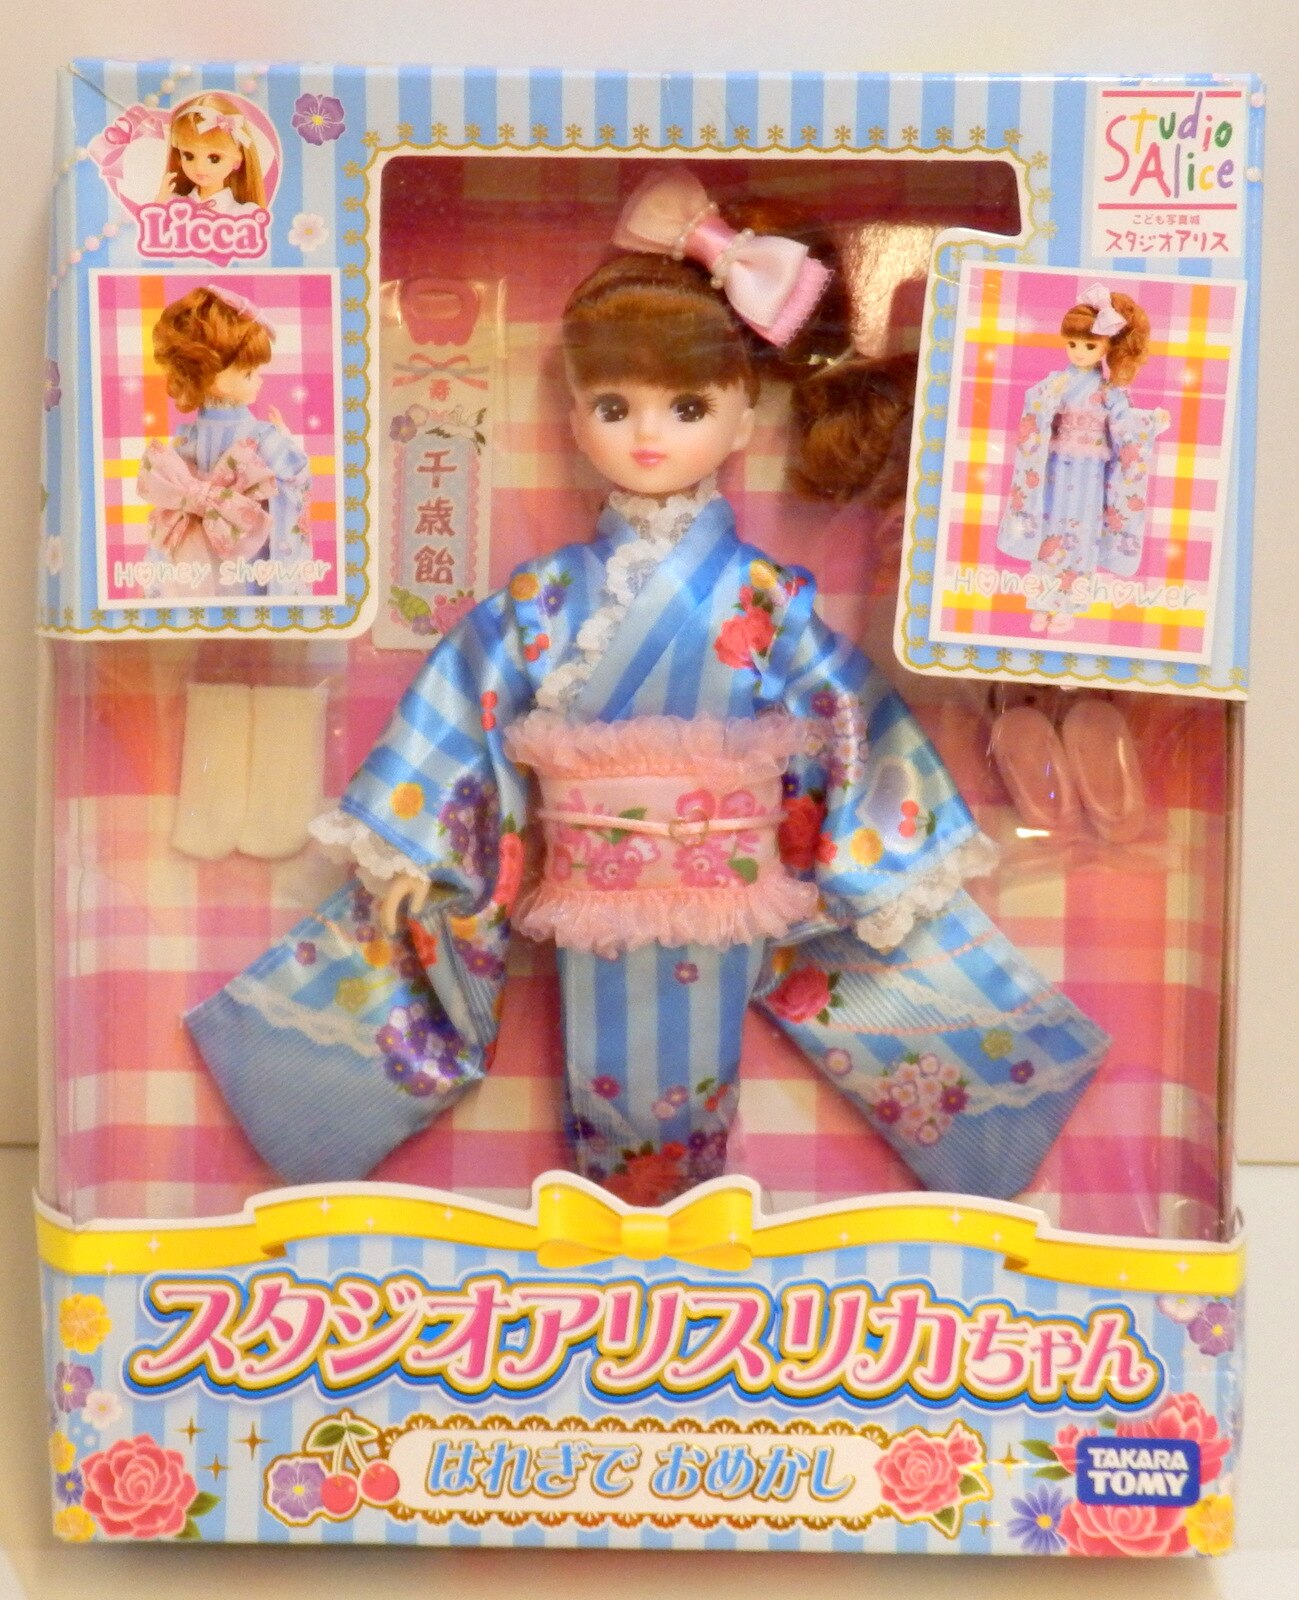 【国産新品】新品未開封 スタジオアリス リカちゃん トランプクイーン 人形